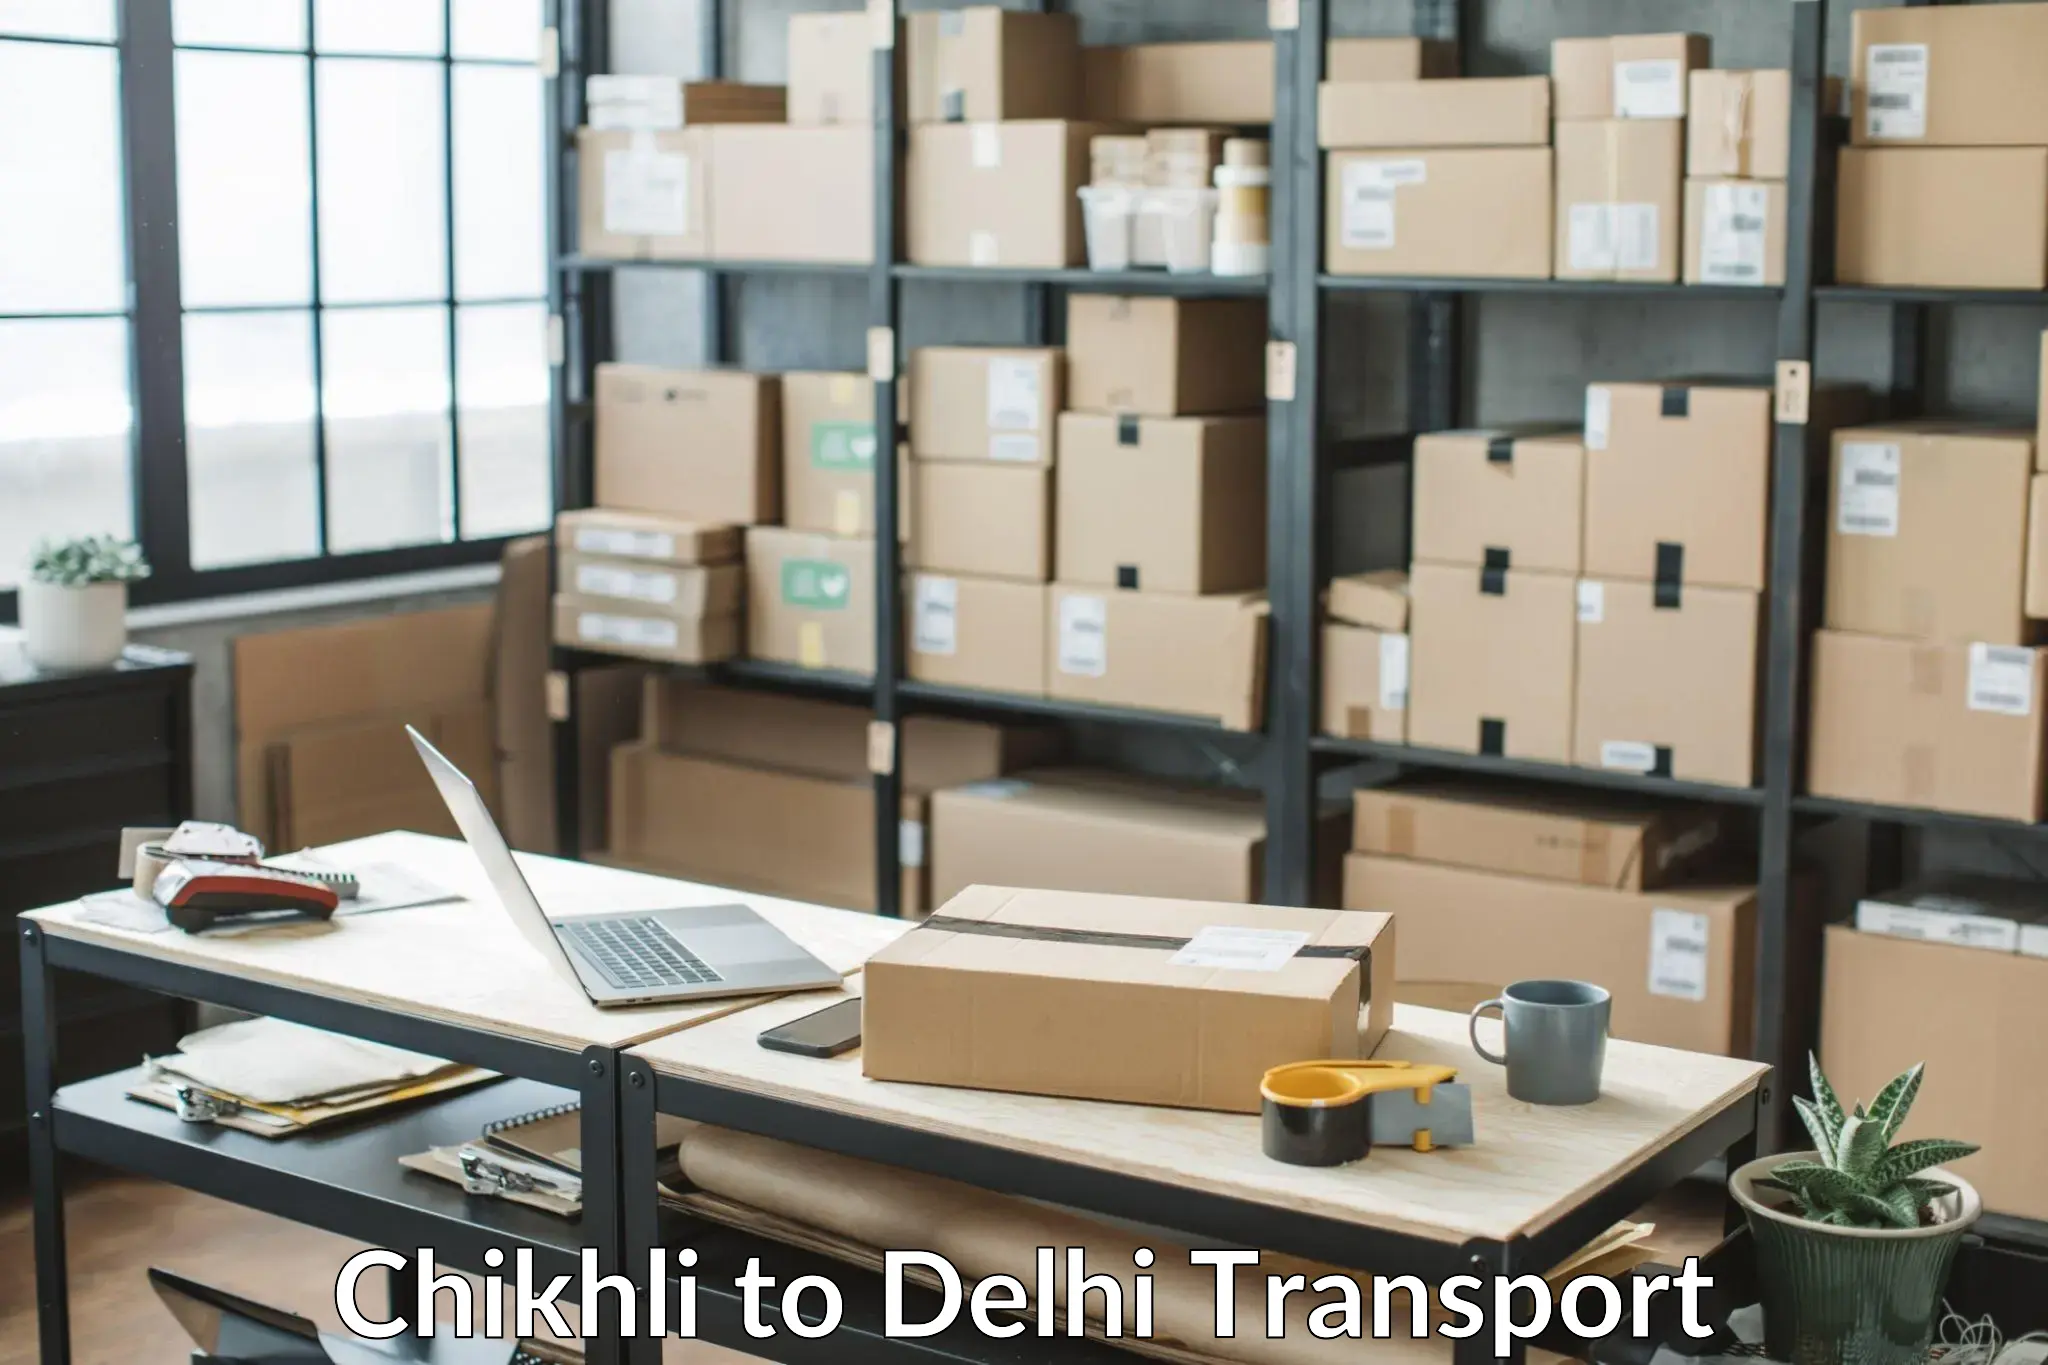 Daily transport service Chikhli to University of Delhi